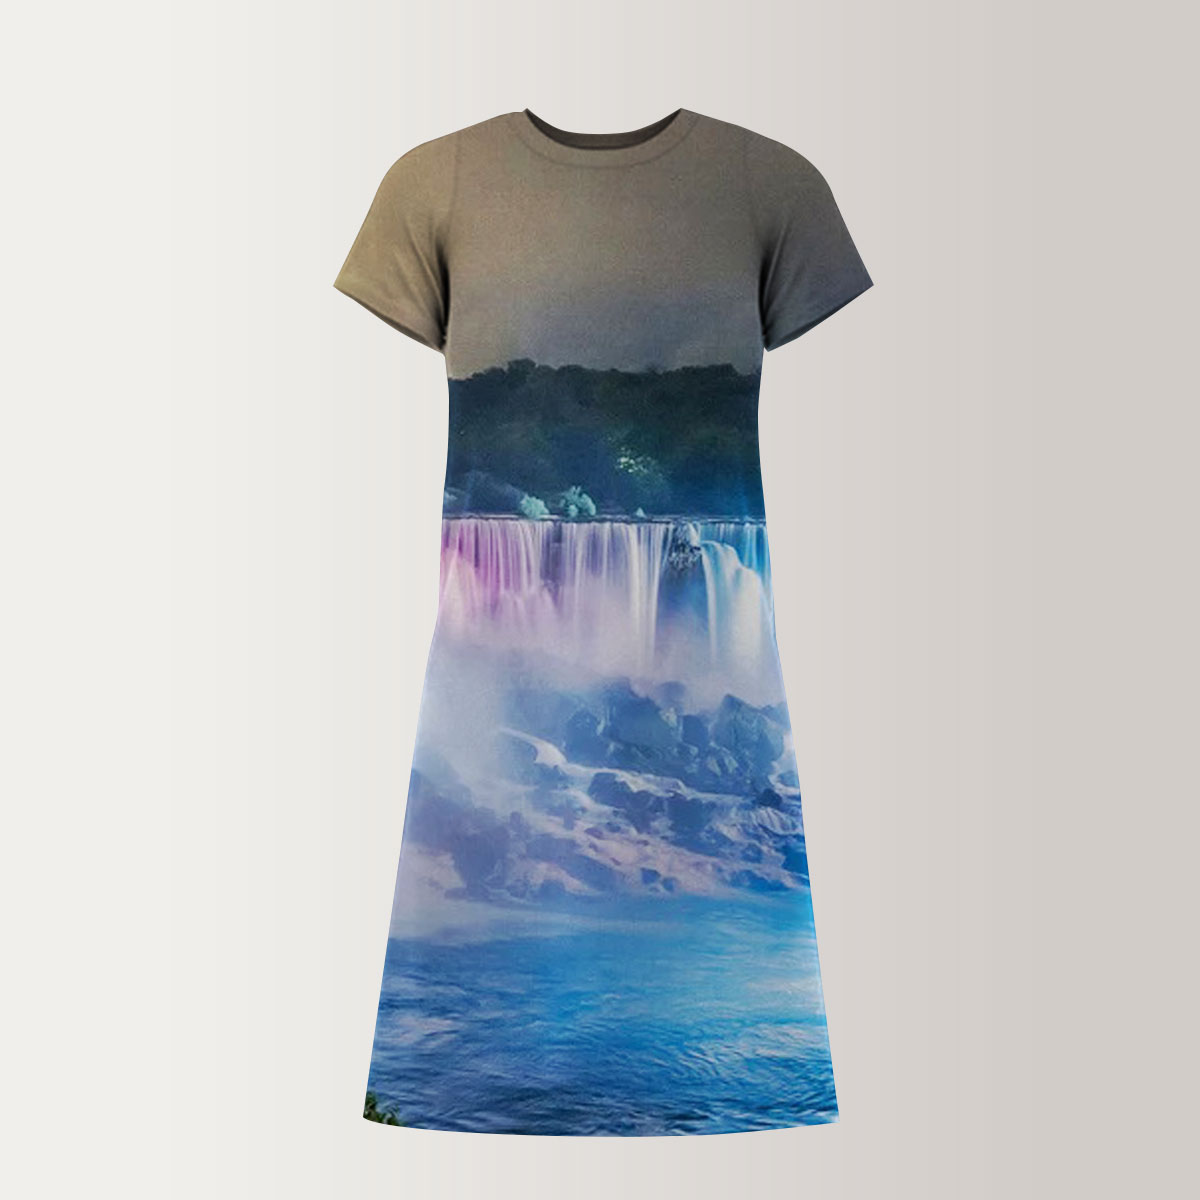 Niagara Falls by Night T-Shirt Dress